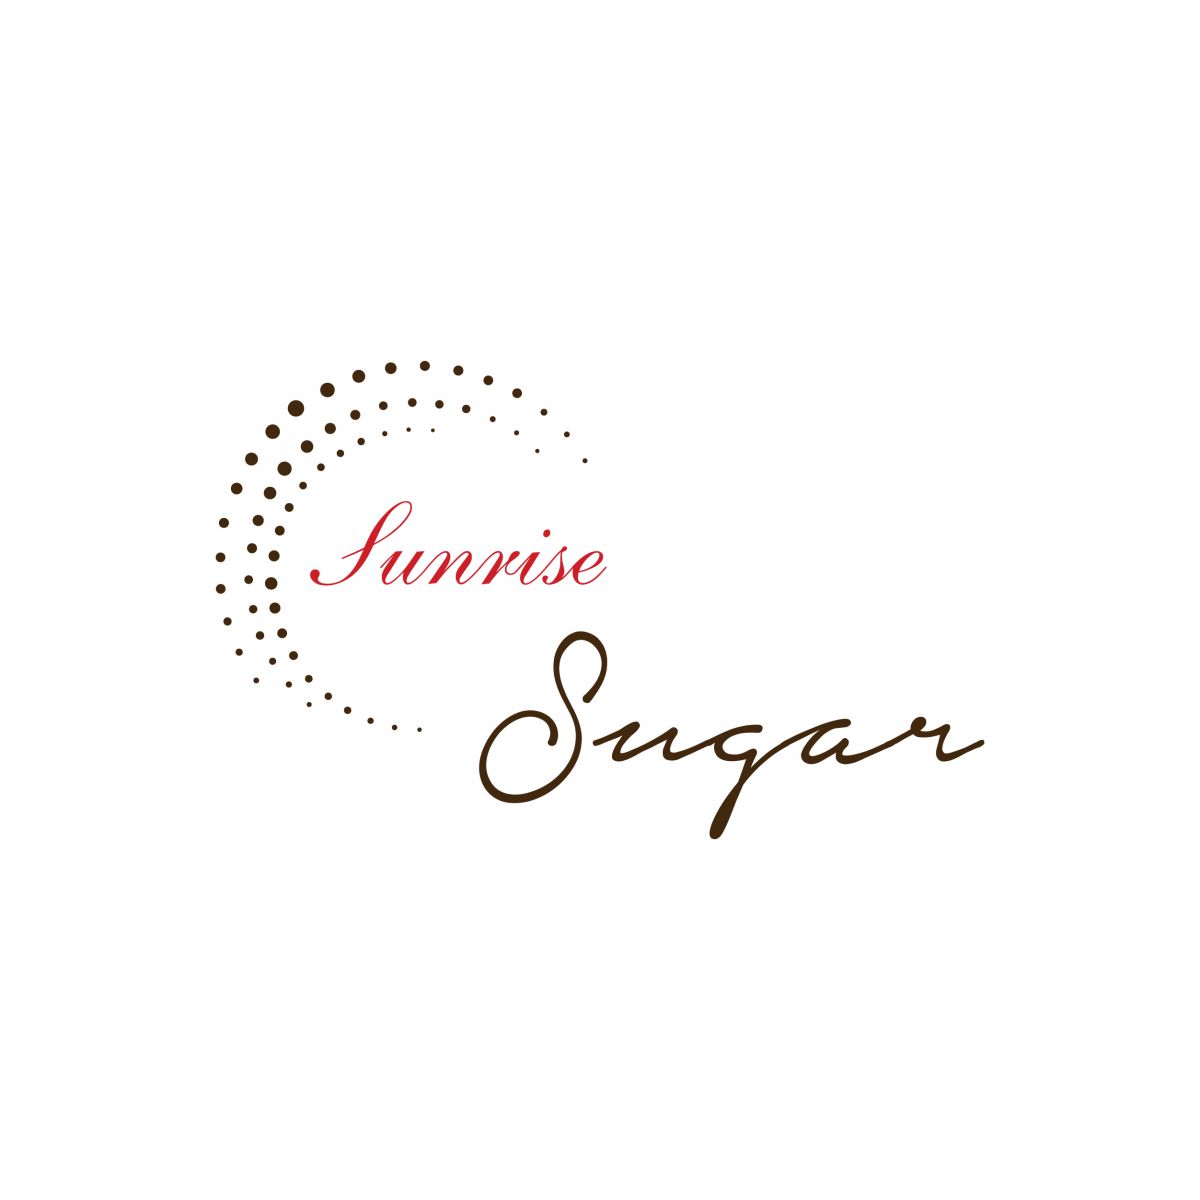 Thiết kế logo công ty Sugar